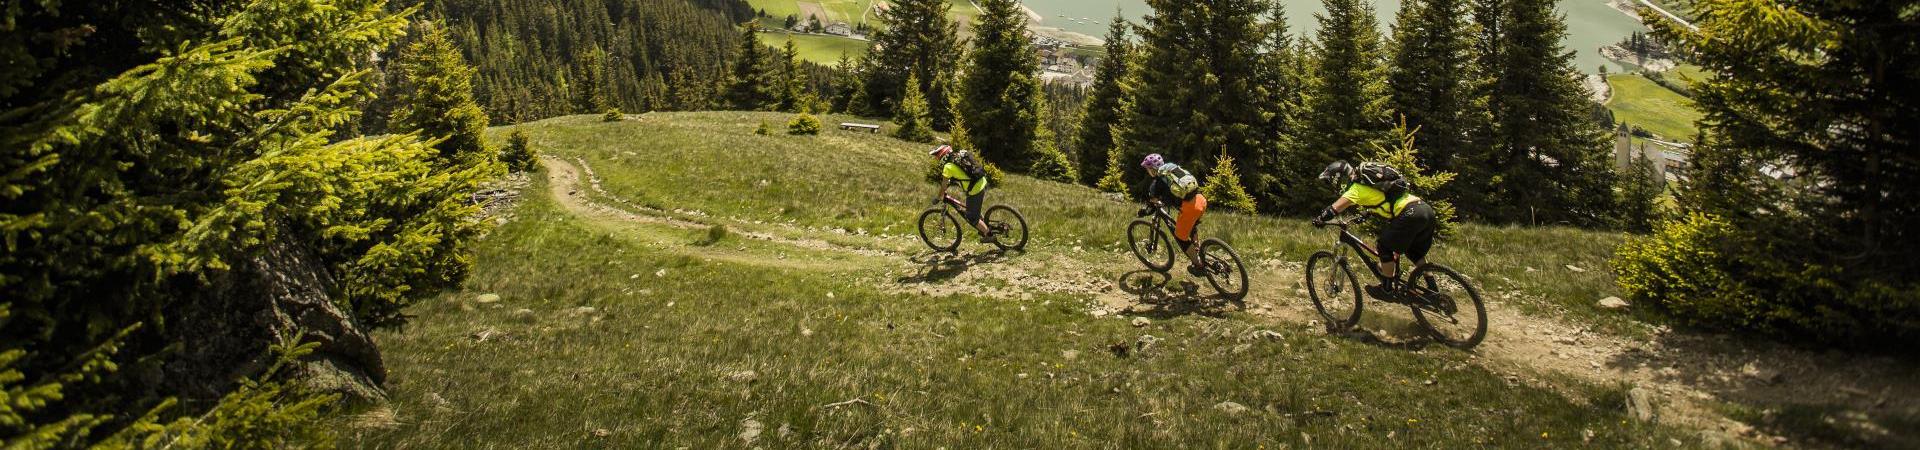 mountainbiken-enduro-plamort-guide-reschenpass-tb